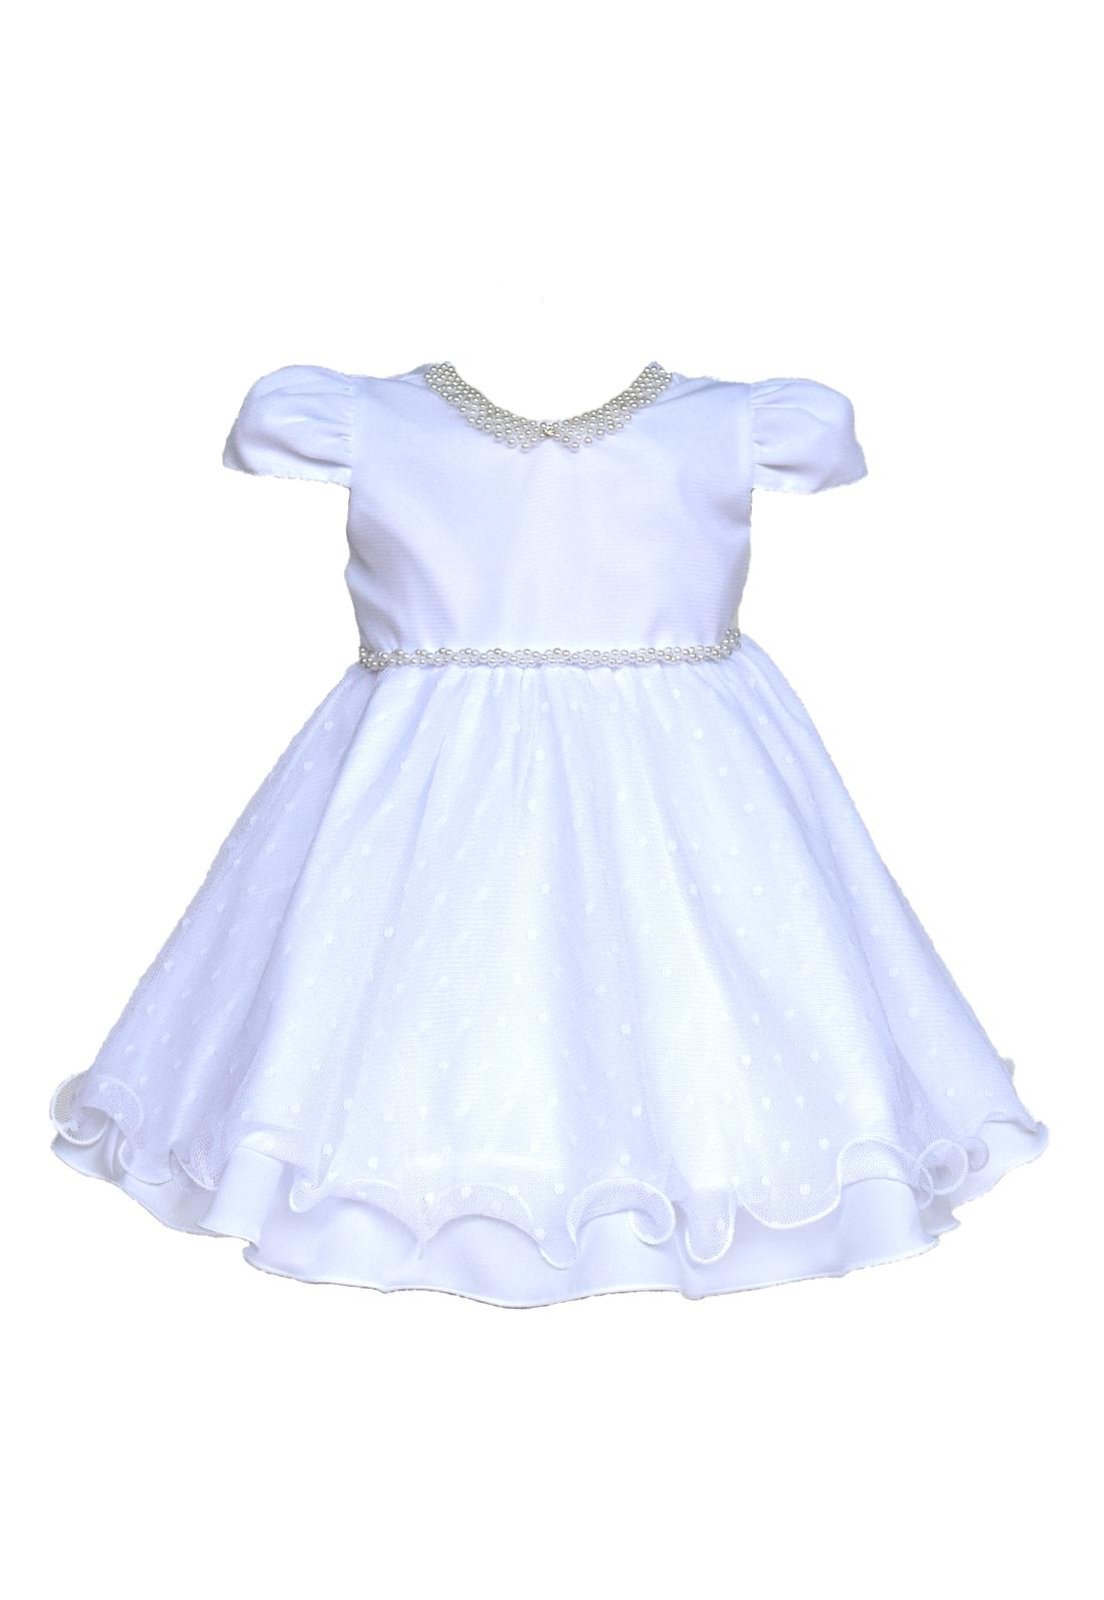 vestido infantil de festa branco